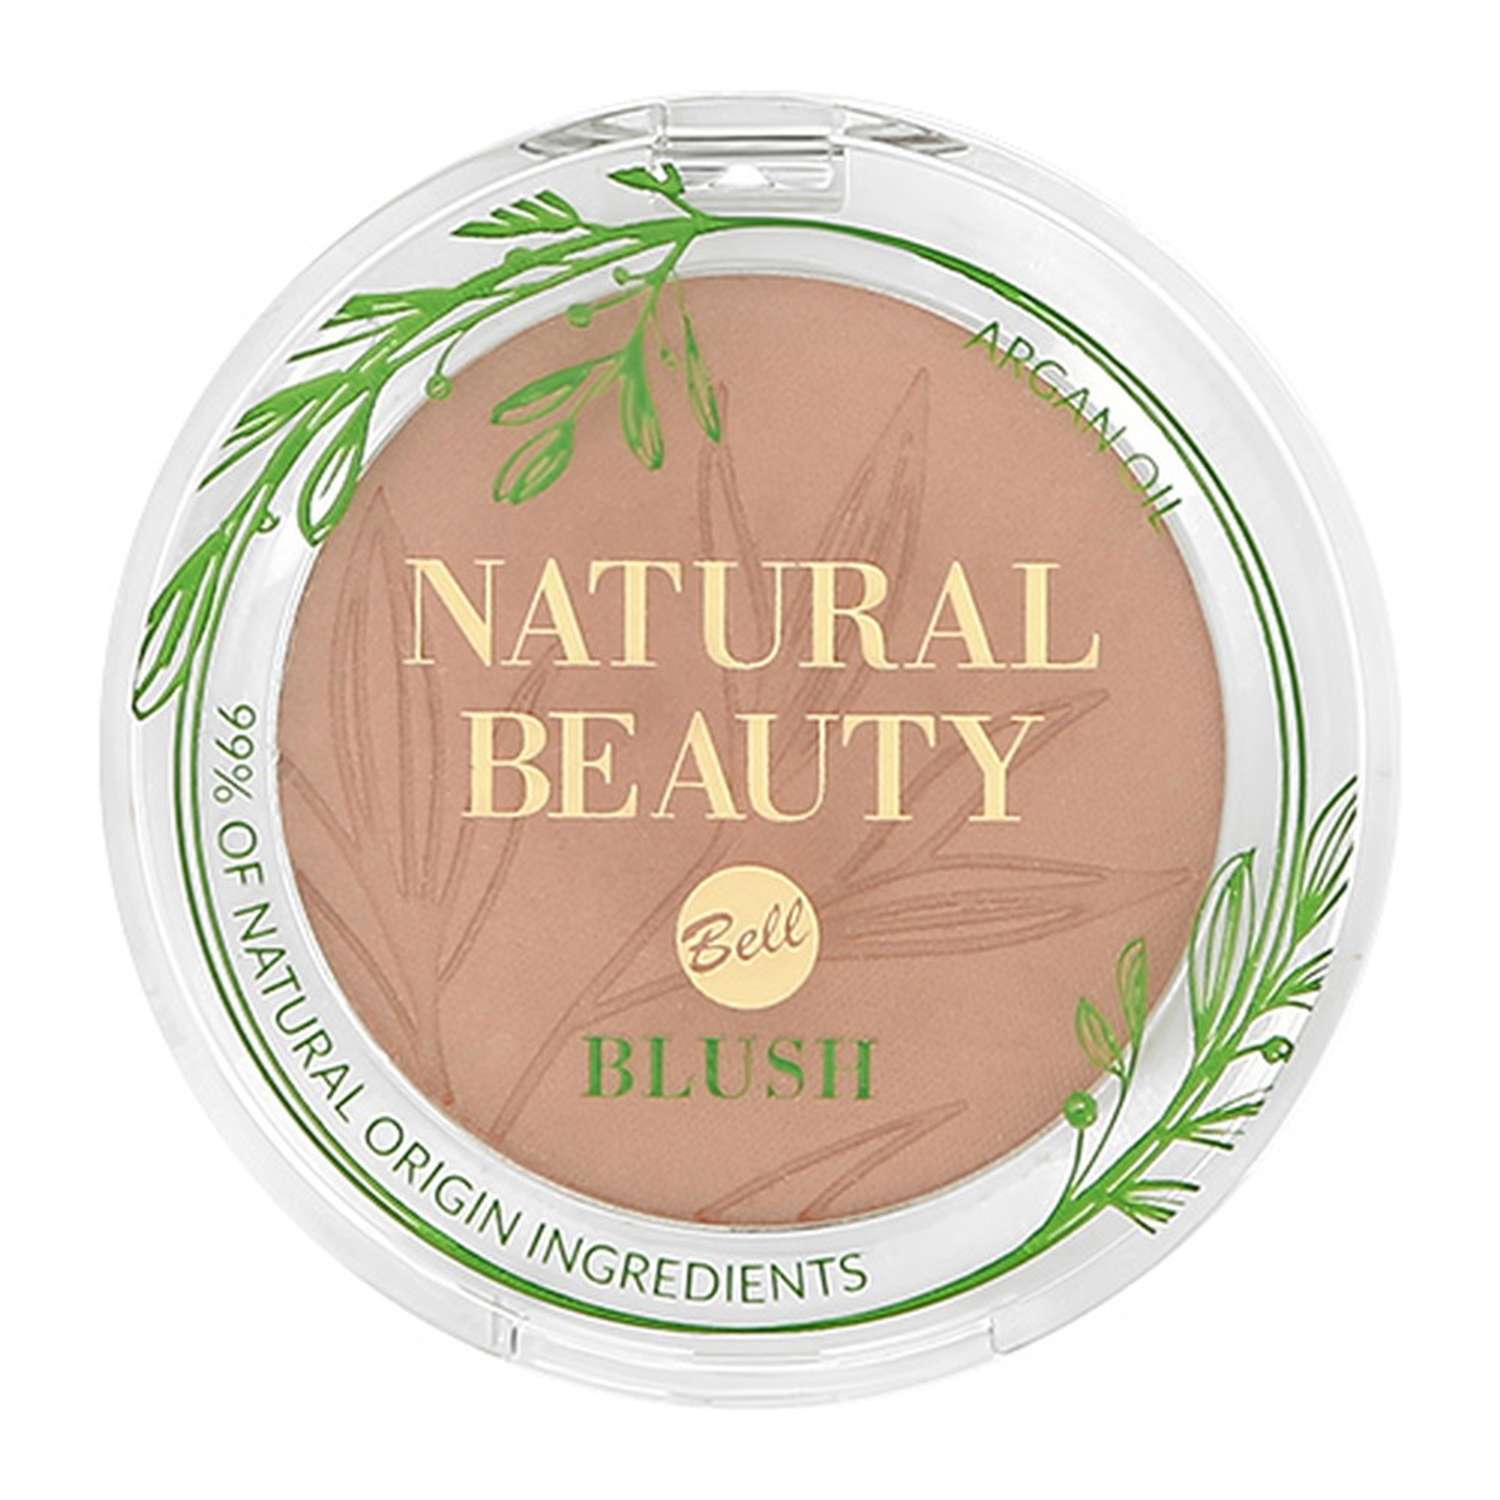 Румяна Bell Natural beauty blush тон pure mauve 99% натуральных ингредиентов - фото 4